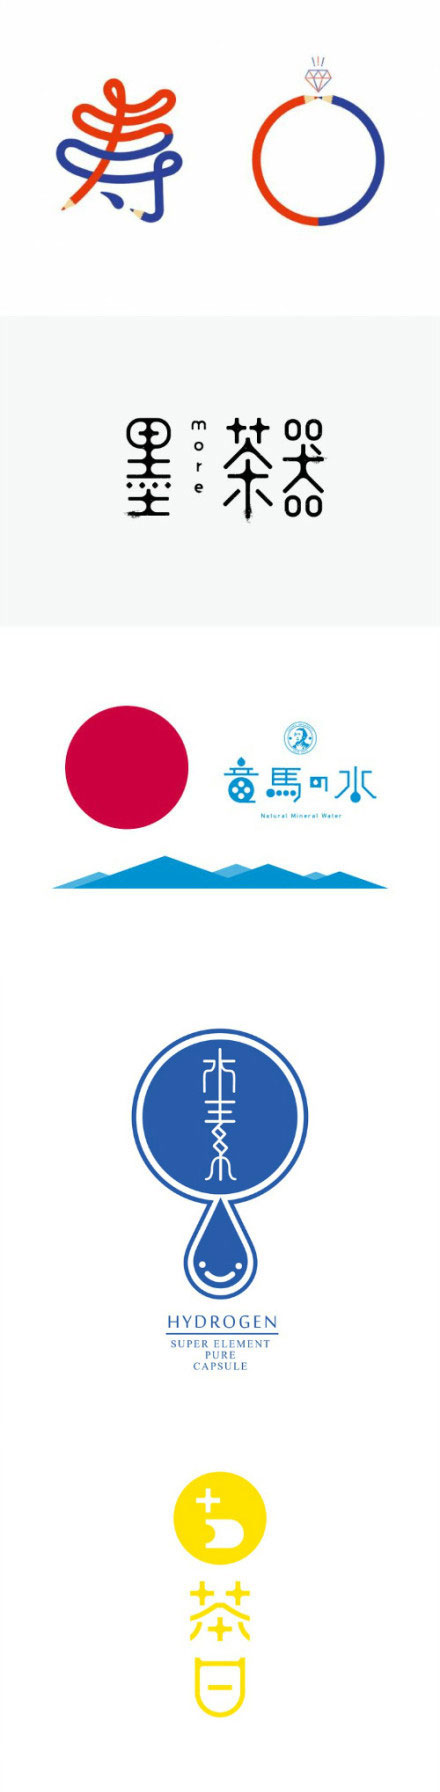 东方审美日本标志设计,字体设计,日本大师字体设计欣赏,标志设计欣赏